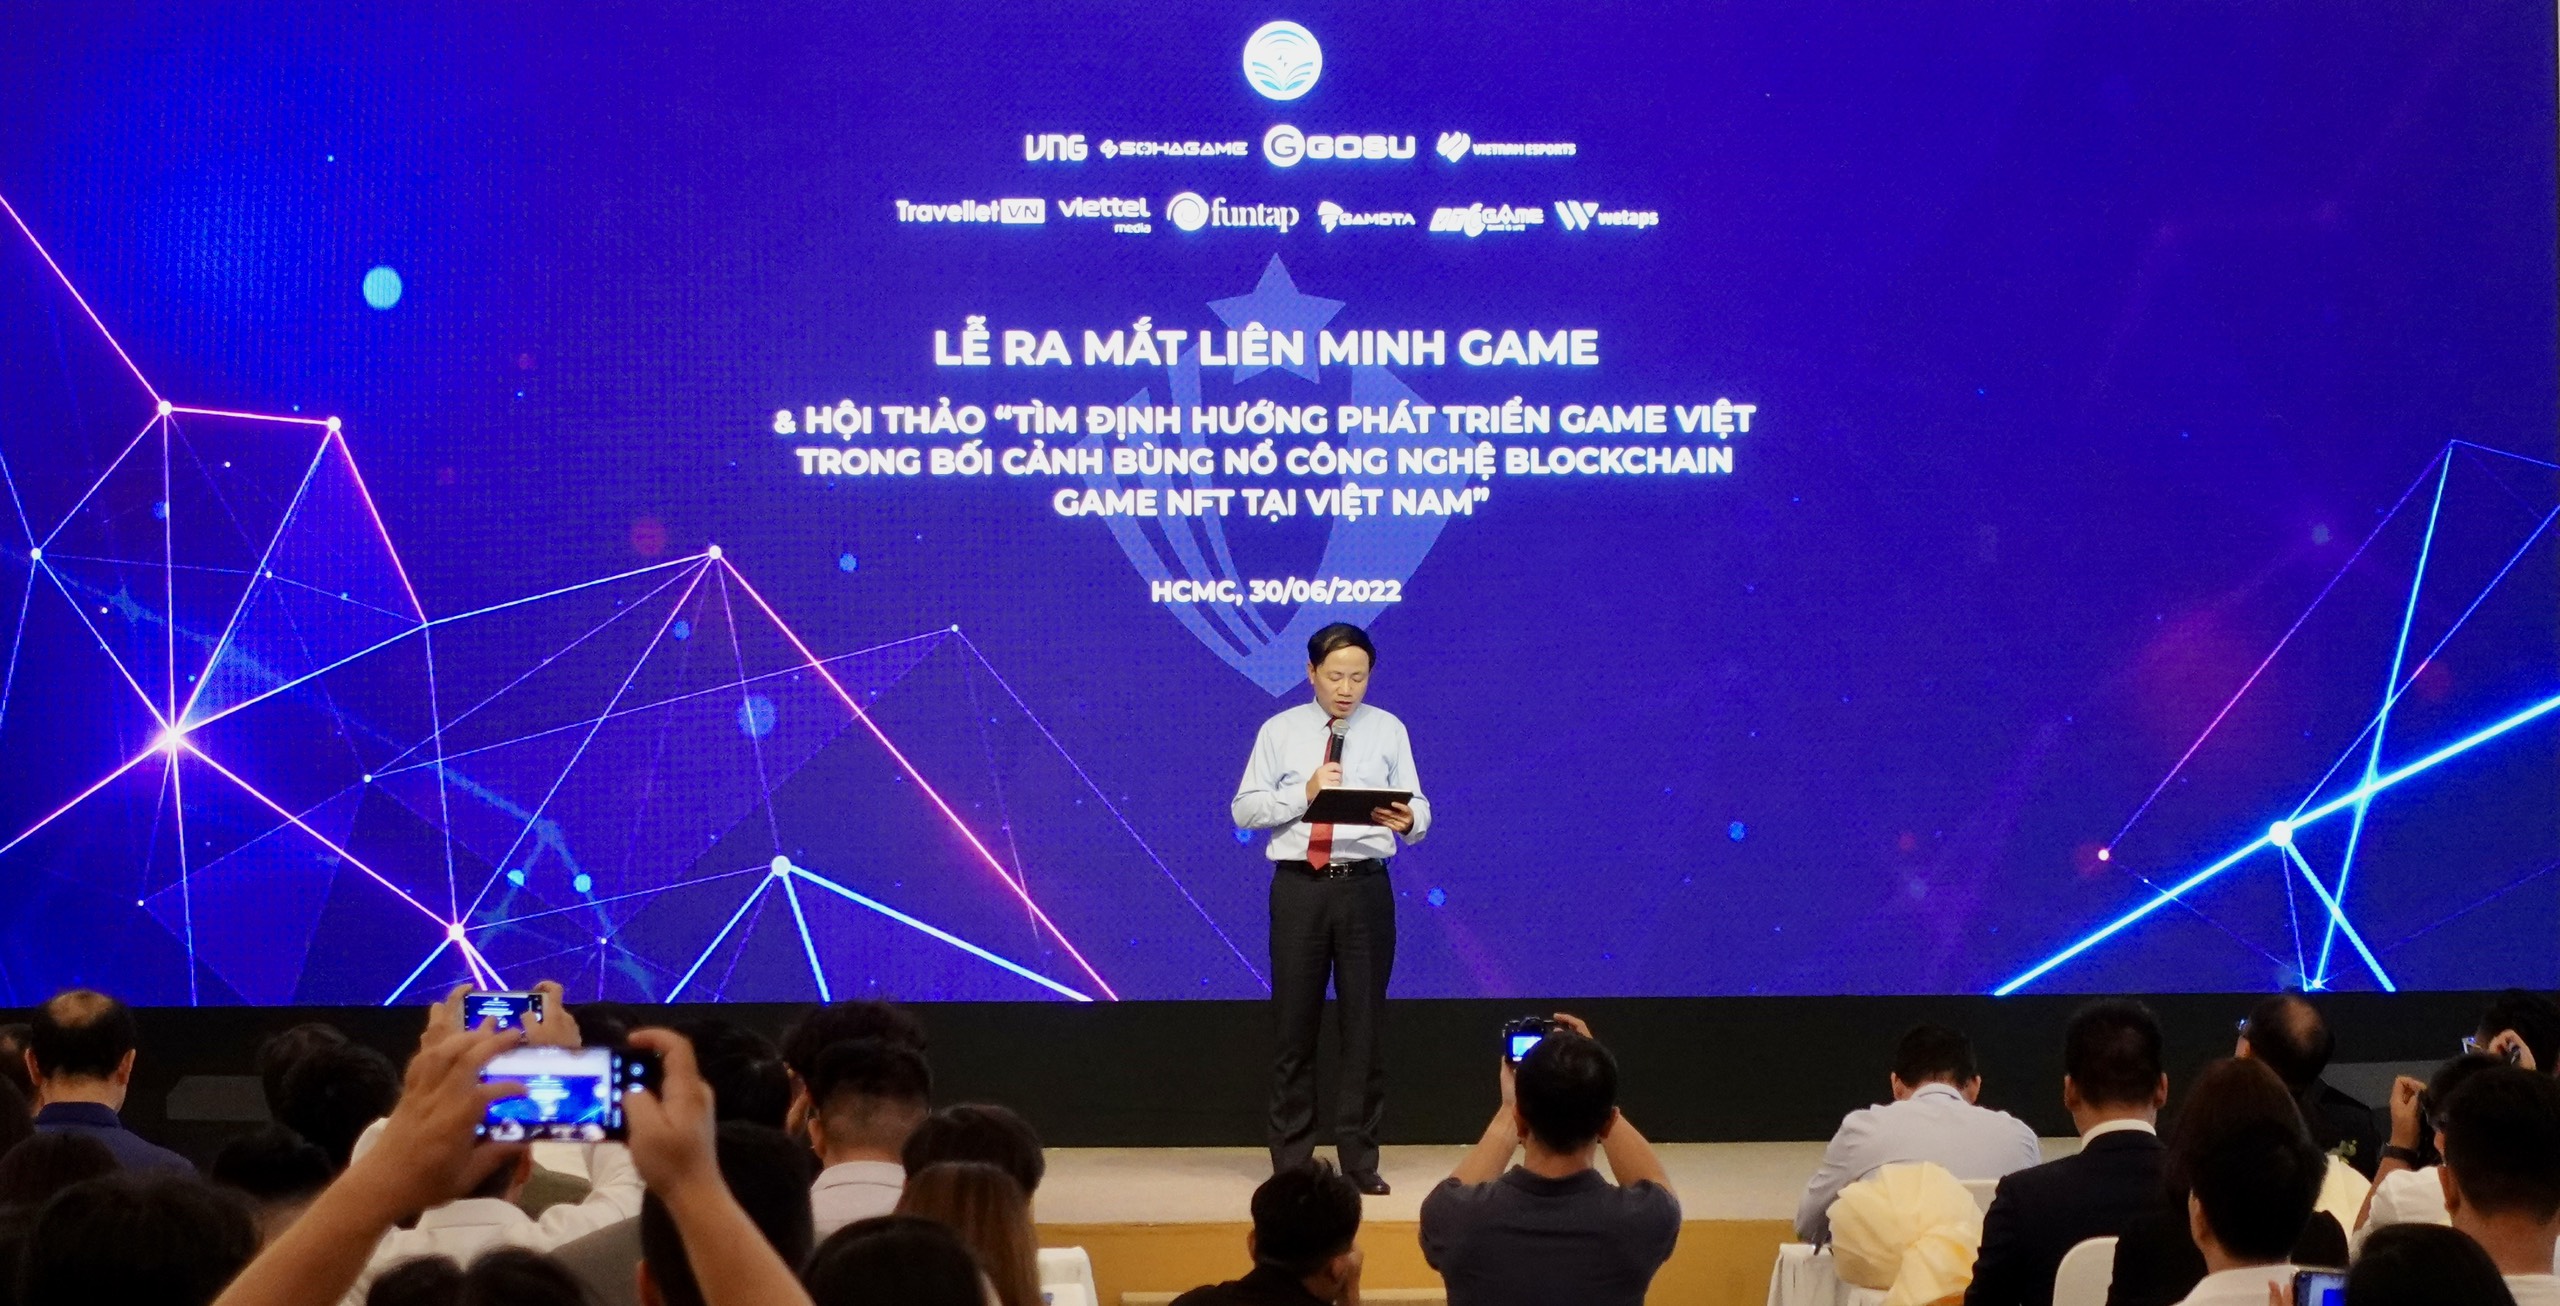 Ra mắt liên minh các nhà sản xuất và phát hành trò chơi điện tử trên mạng tại Việt Nam